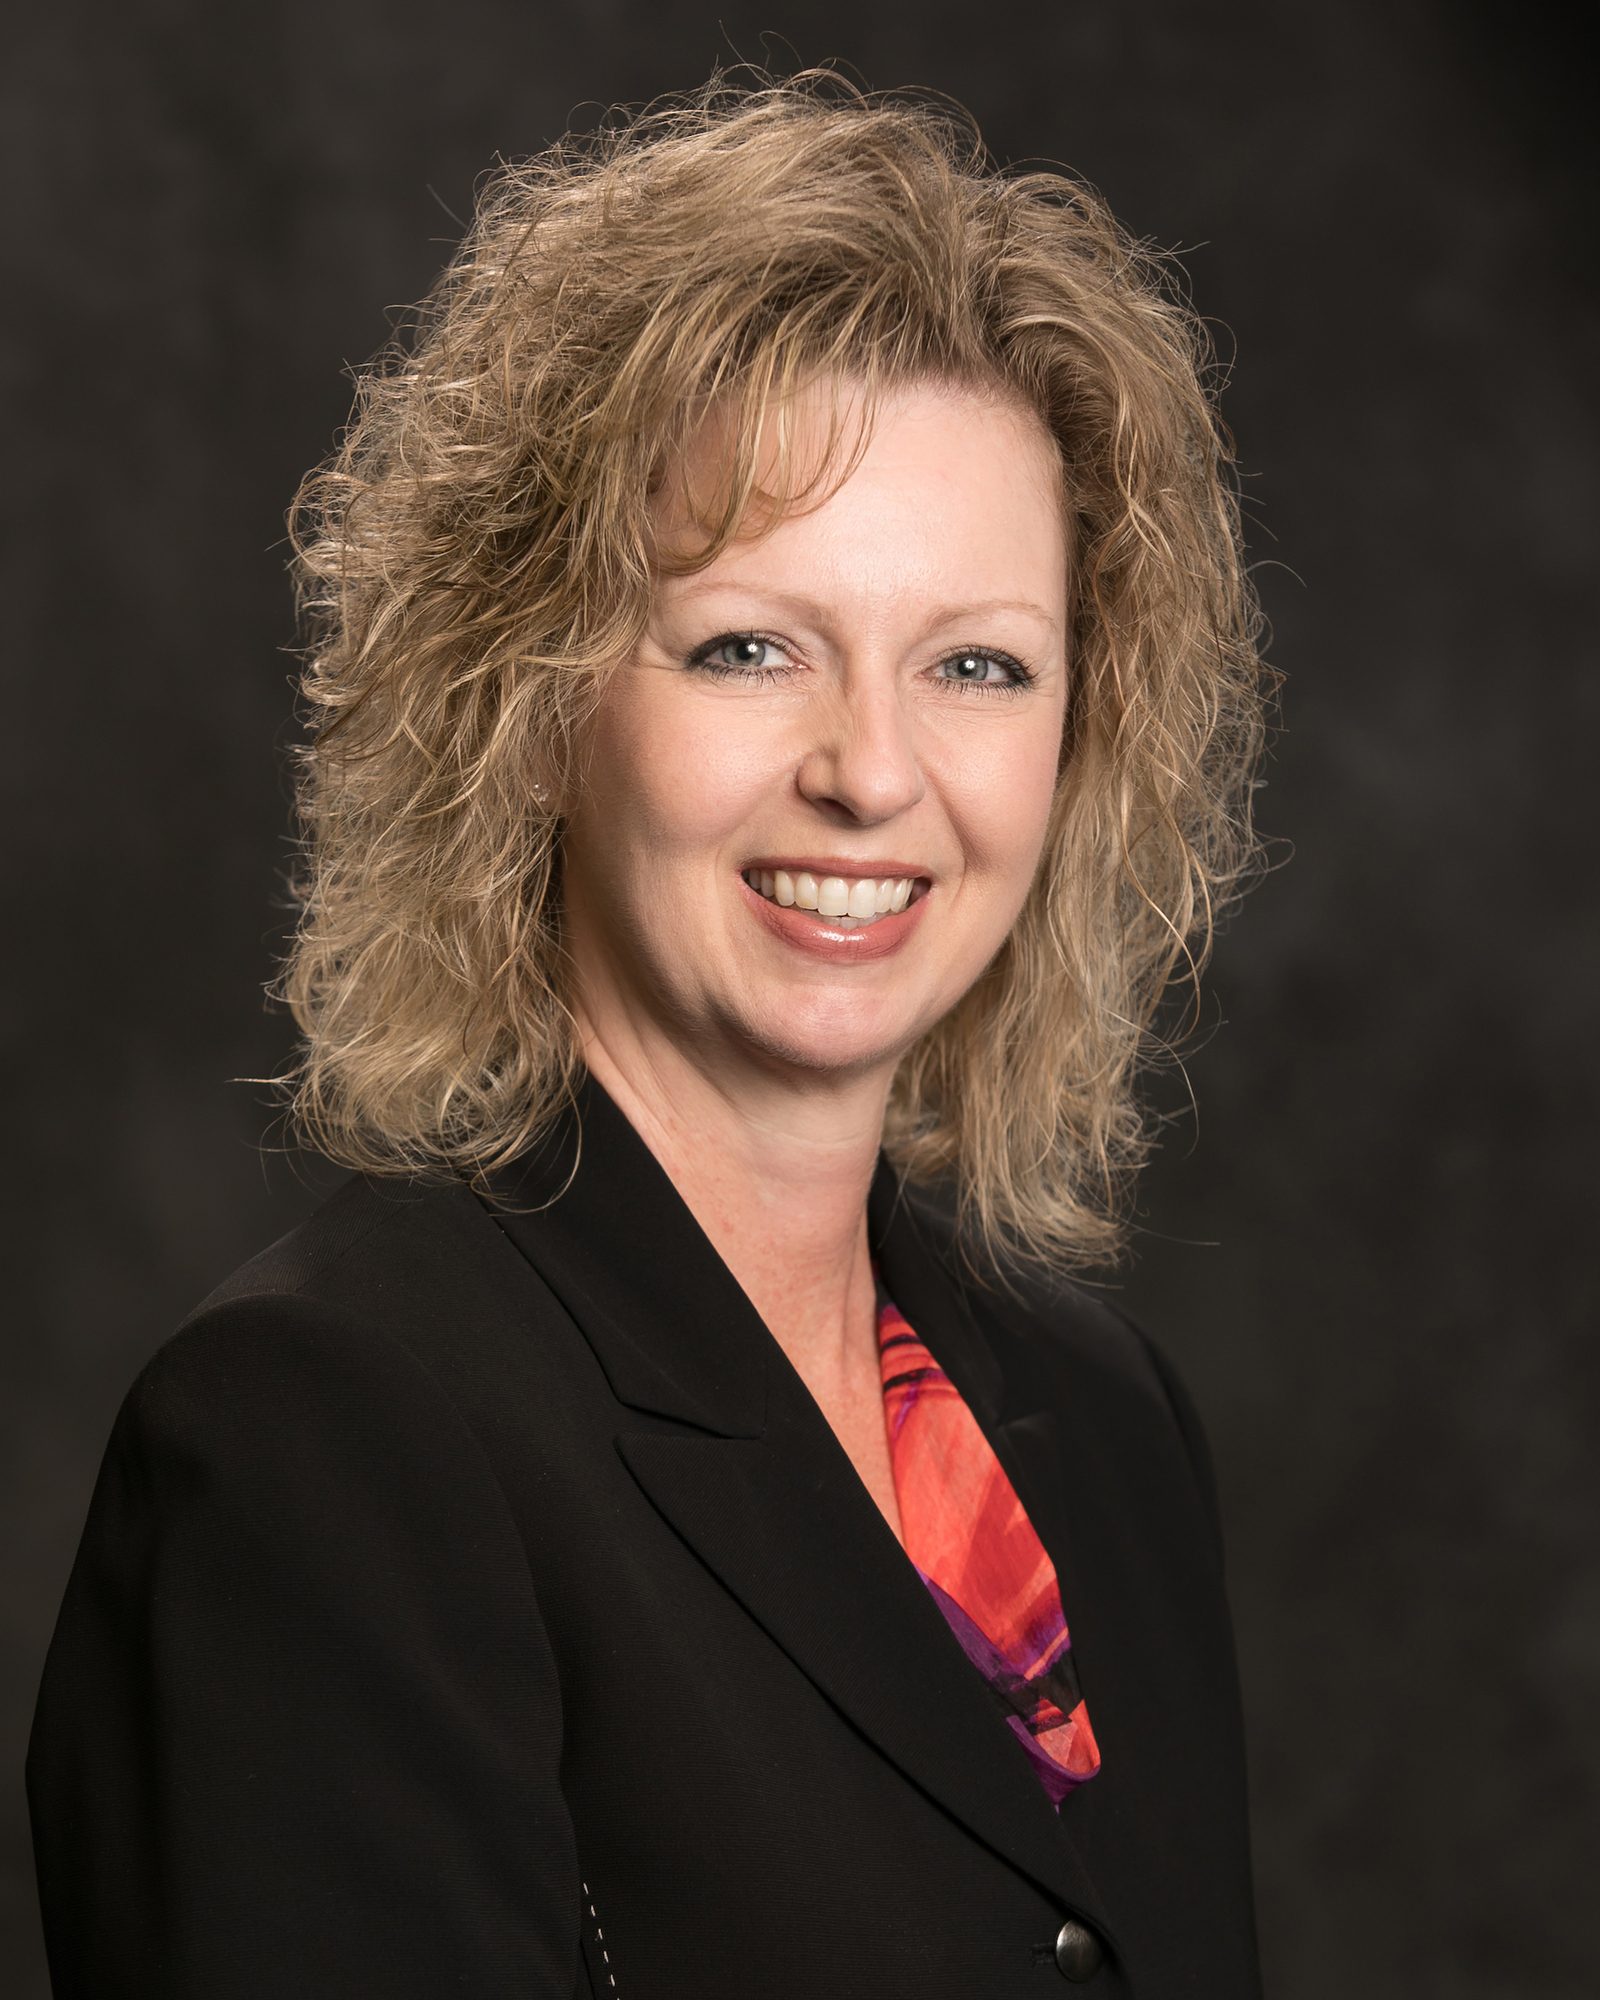 Tricia L. Dorcheff, Registered Sr. Client Service Associate at Stifel of Cincinnati